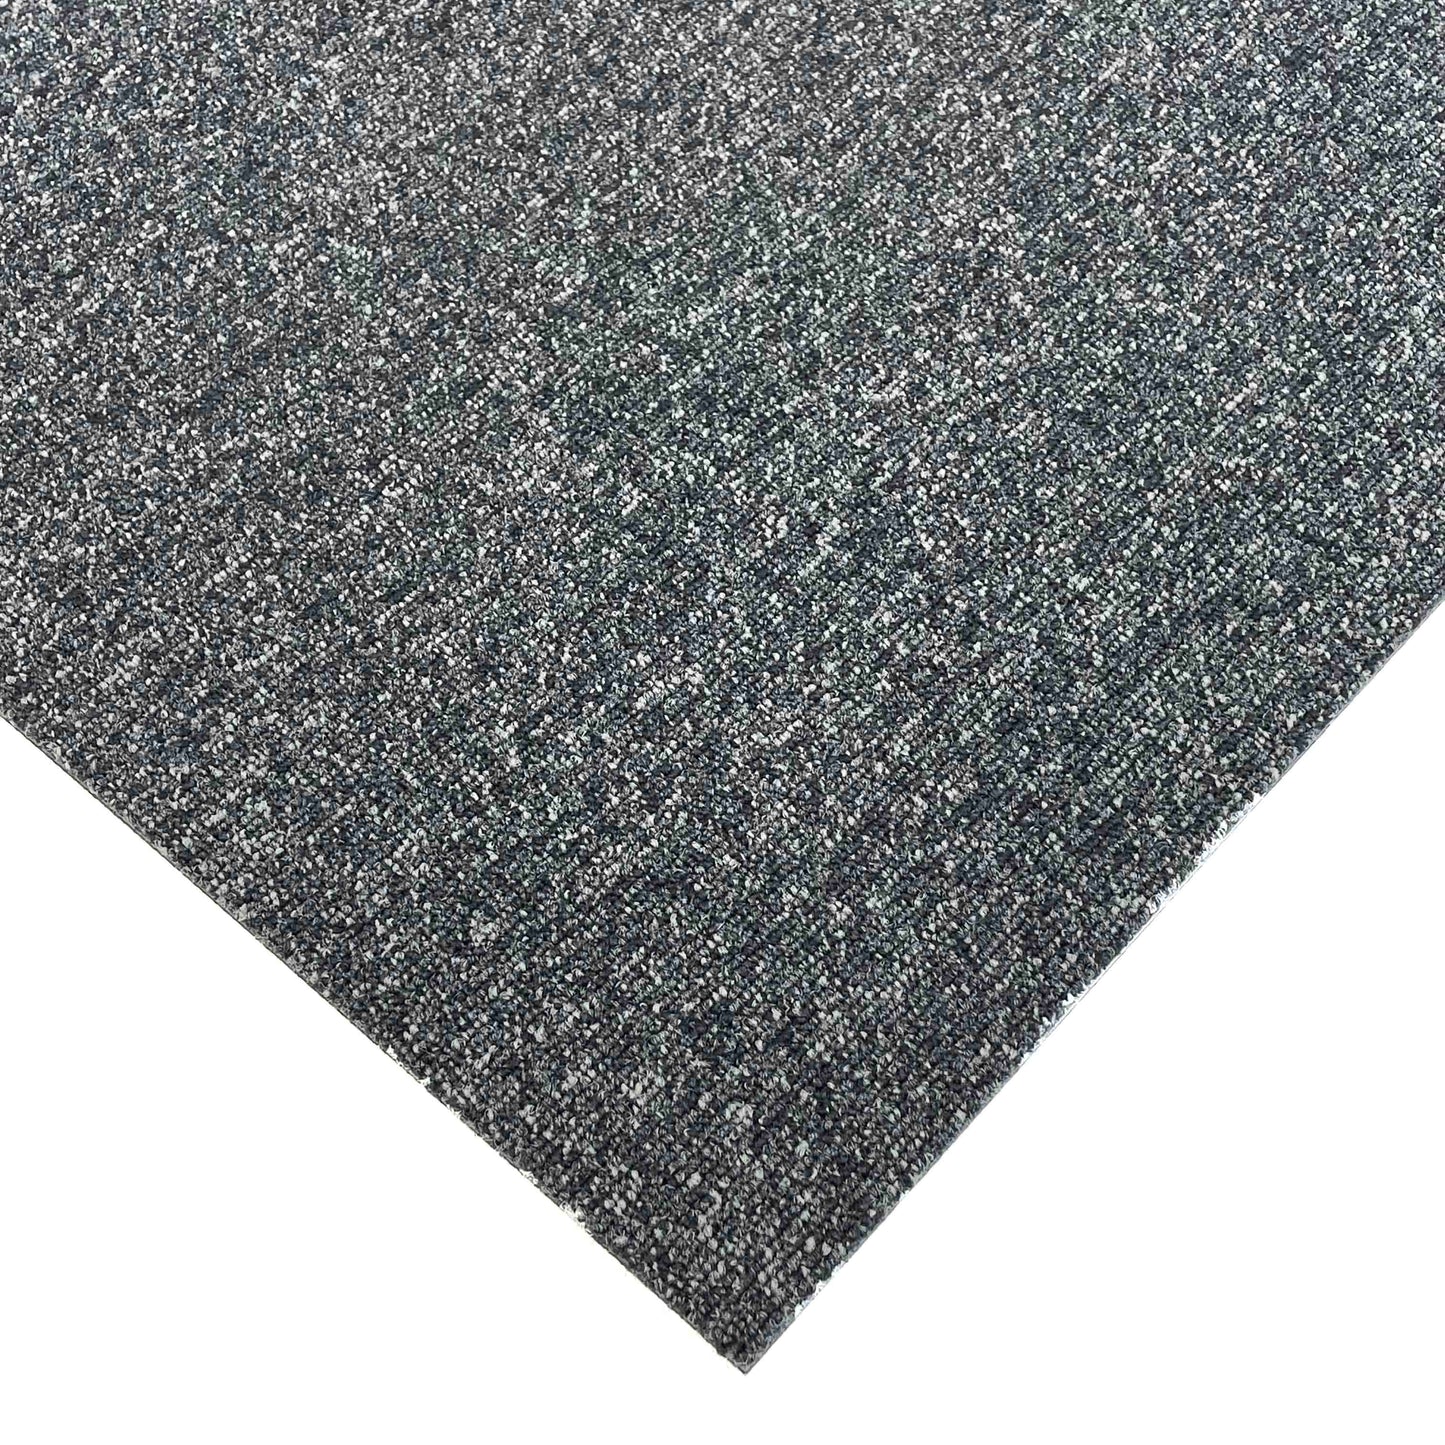 Charcoal Grey Speckled Carpet Tiles